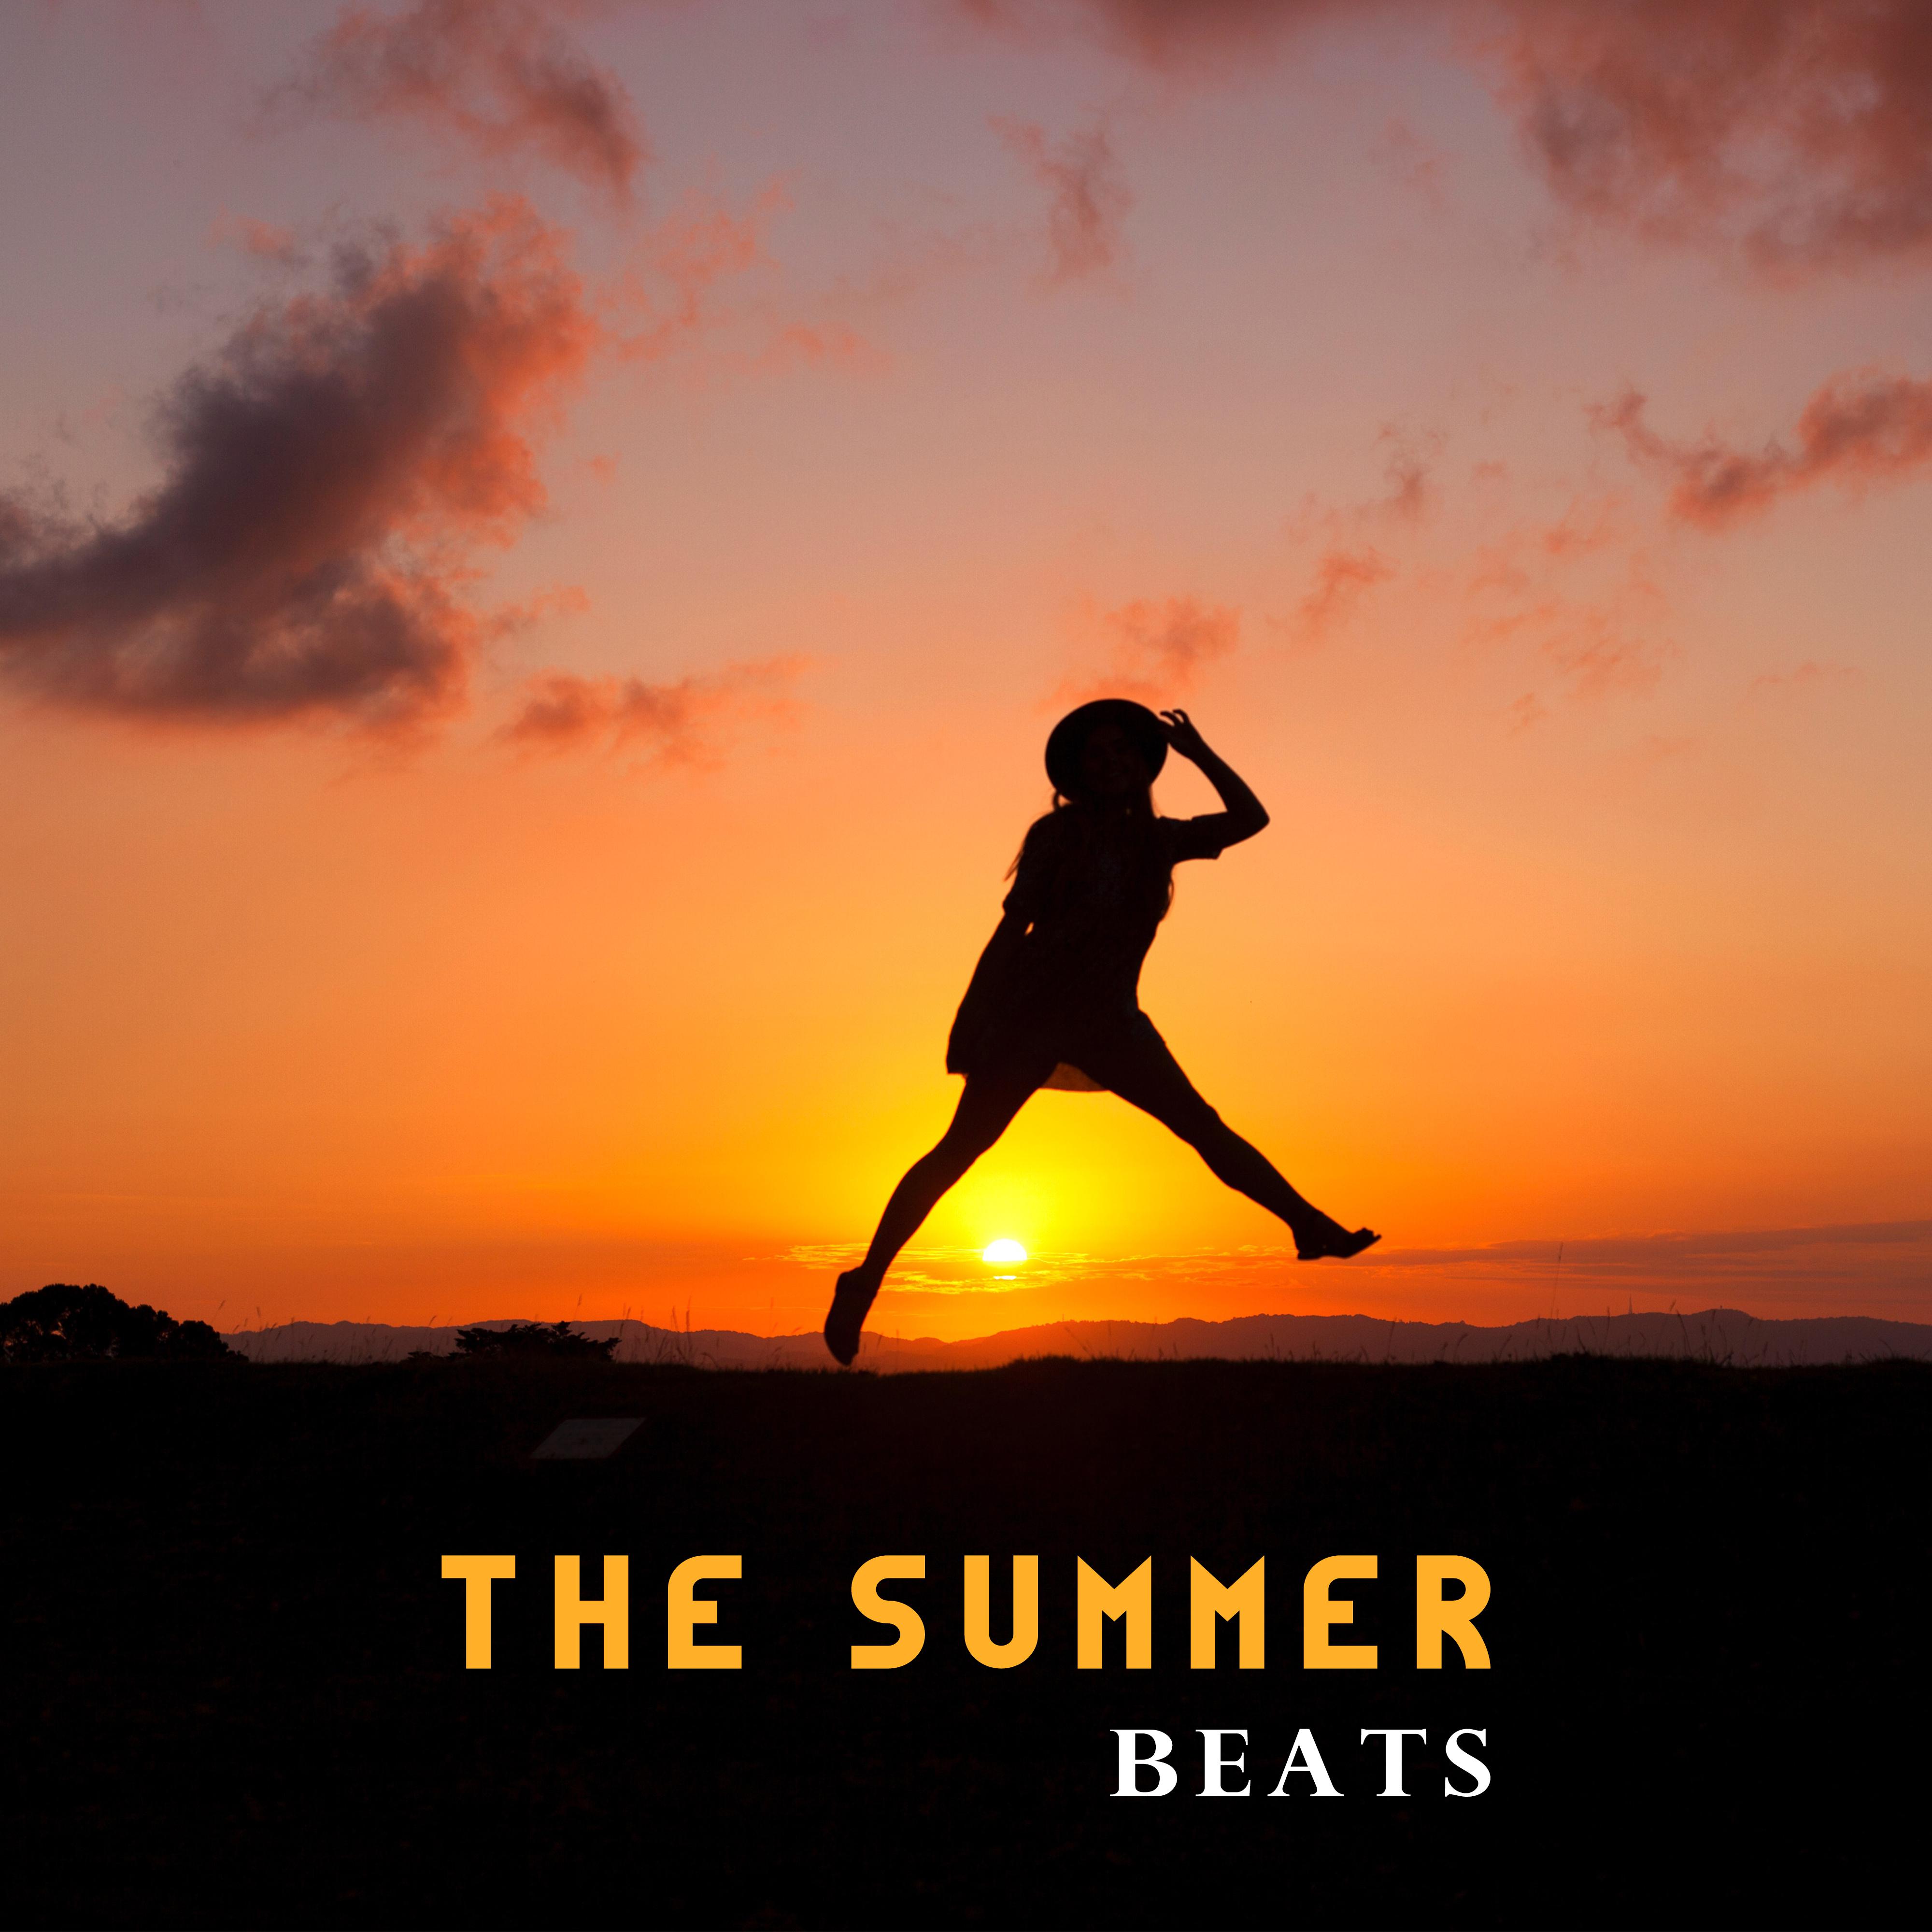 The Summer Beats